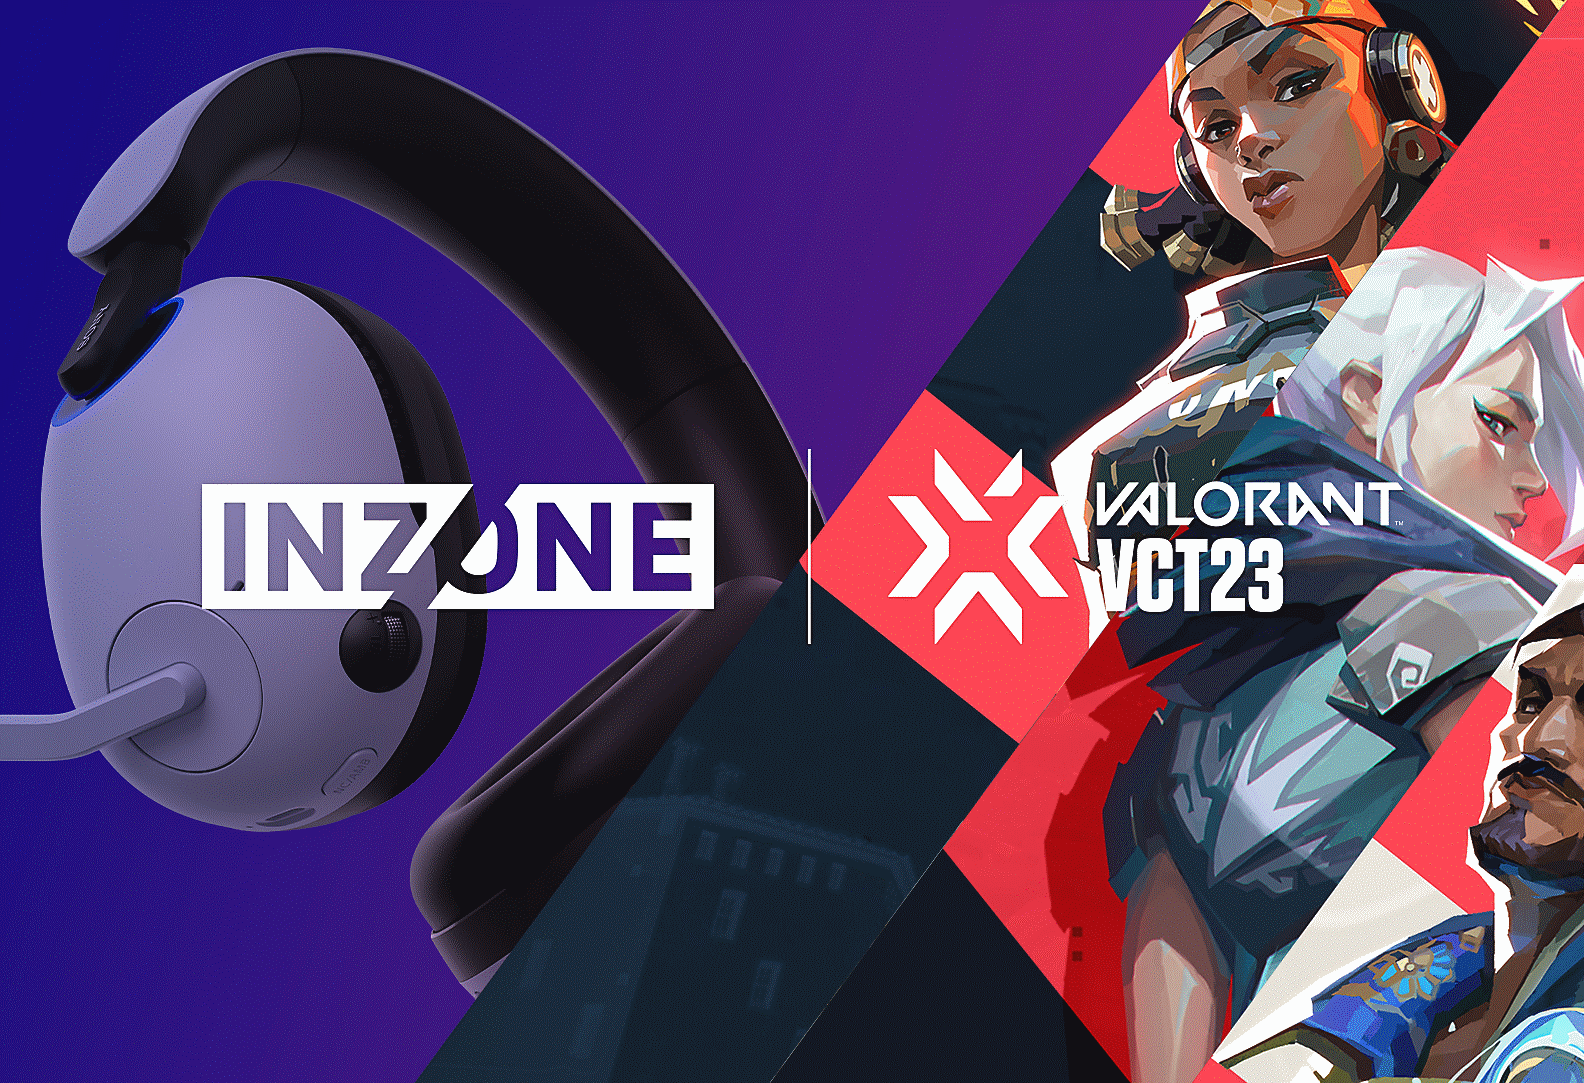 ภาพชุดหูฟังสำหรับเล่นเกม INZONE H9 ของ Sony พร้อมตัวละคร VALORANT และโลโก้ INZONE และ VALORANT VCT23